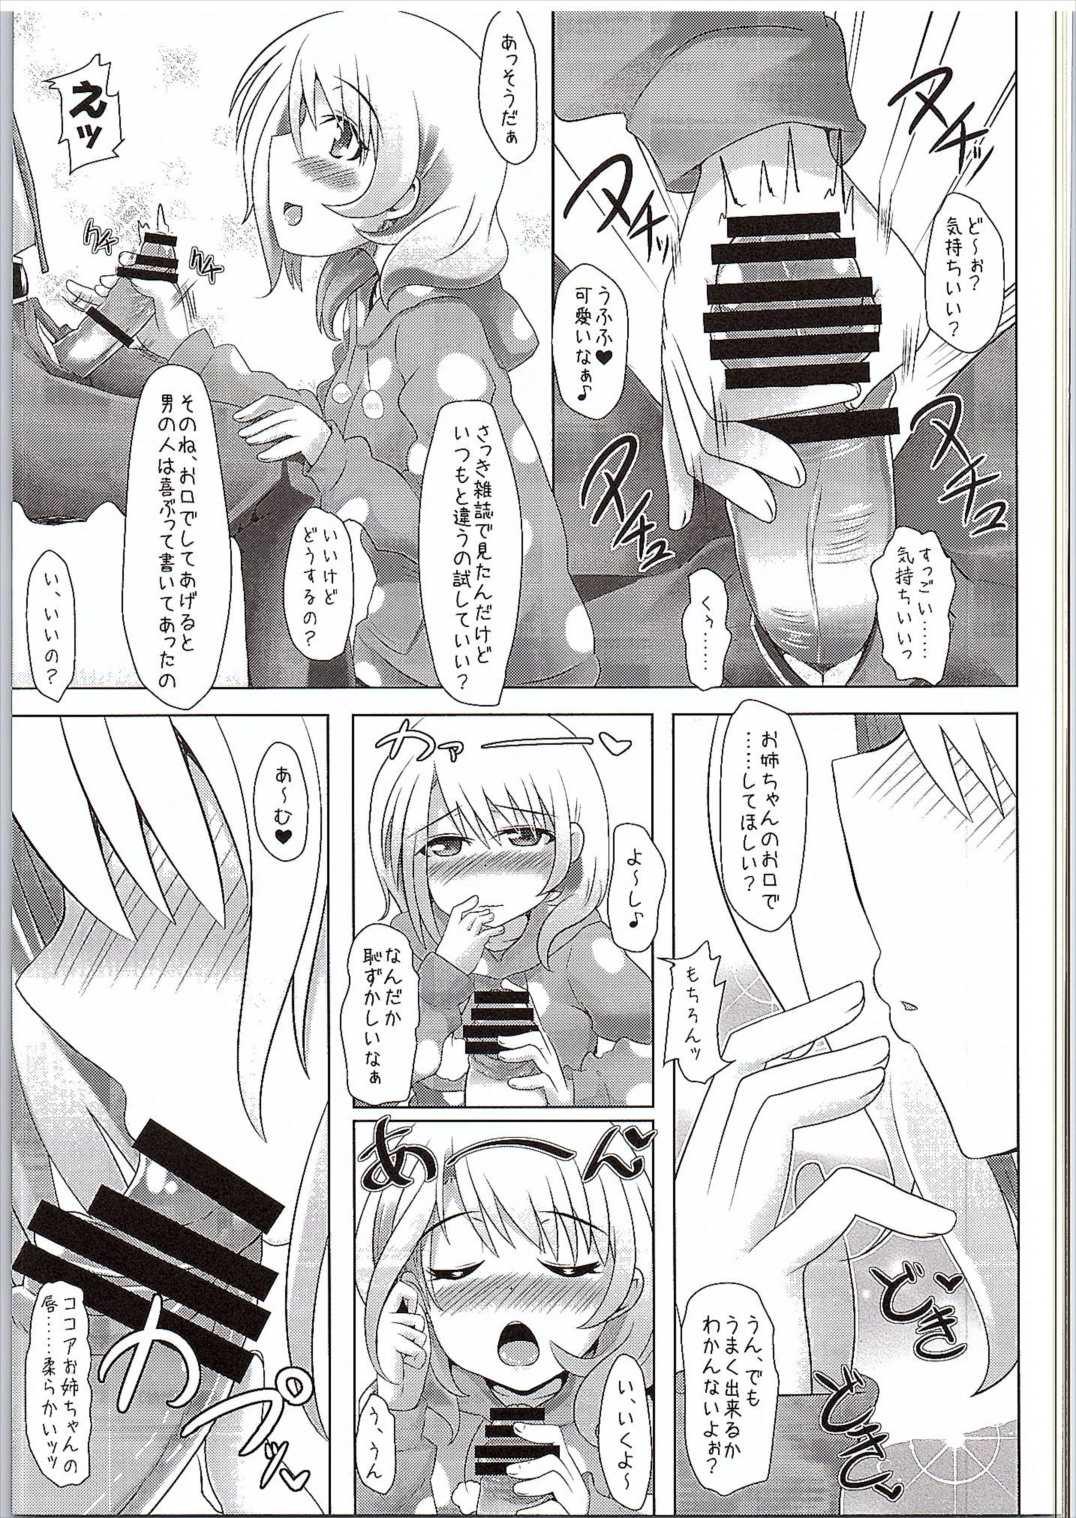 4some (SC2016 Winter) [Toculitoc (Tokurito)] Kokoa Onee-chan (Toshishita) ni Amaetainda! (Gochuumon wa Usagi desu ka?) - Gochuumon wa usagi desu ka Ride - Page 4